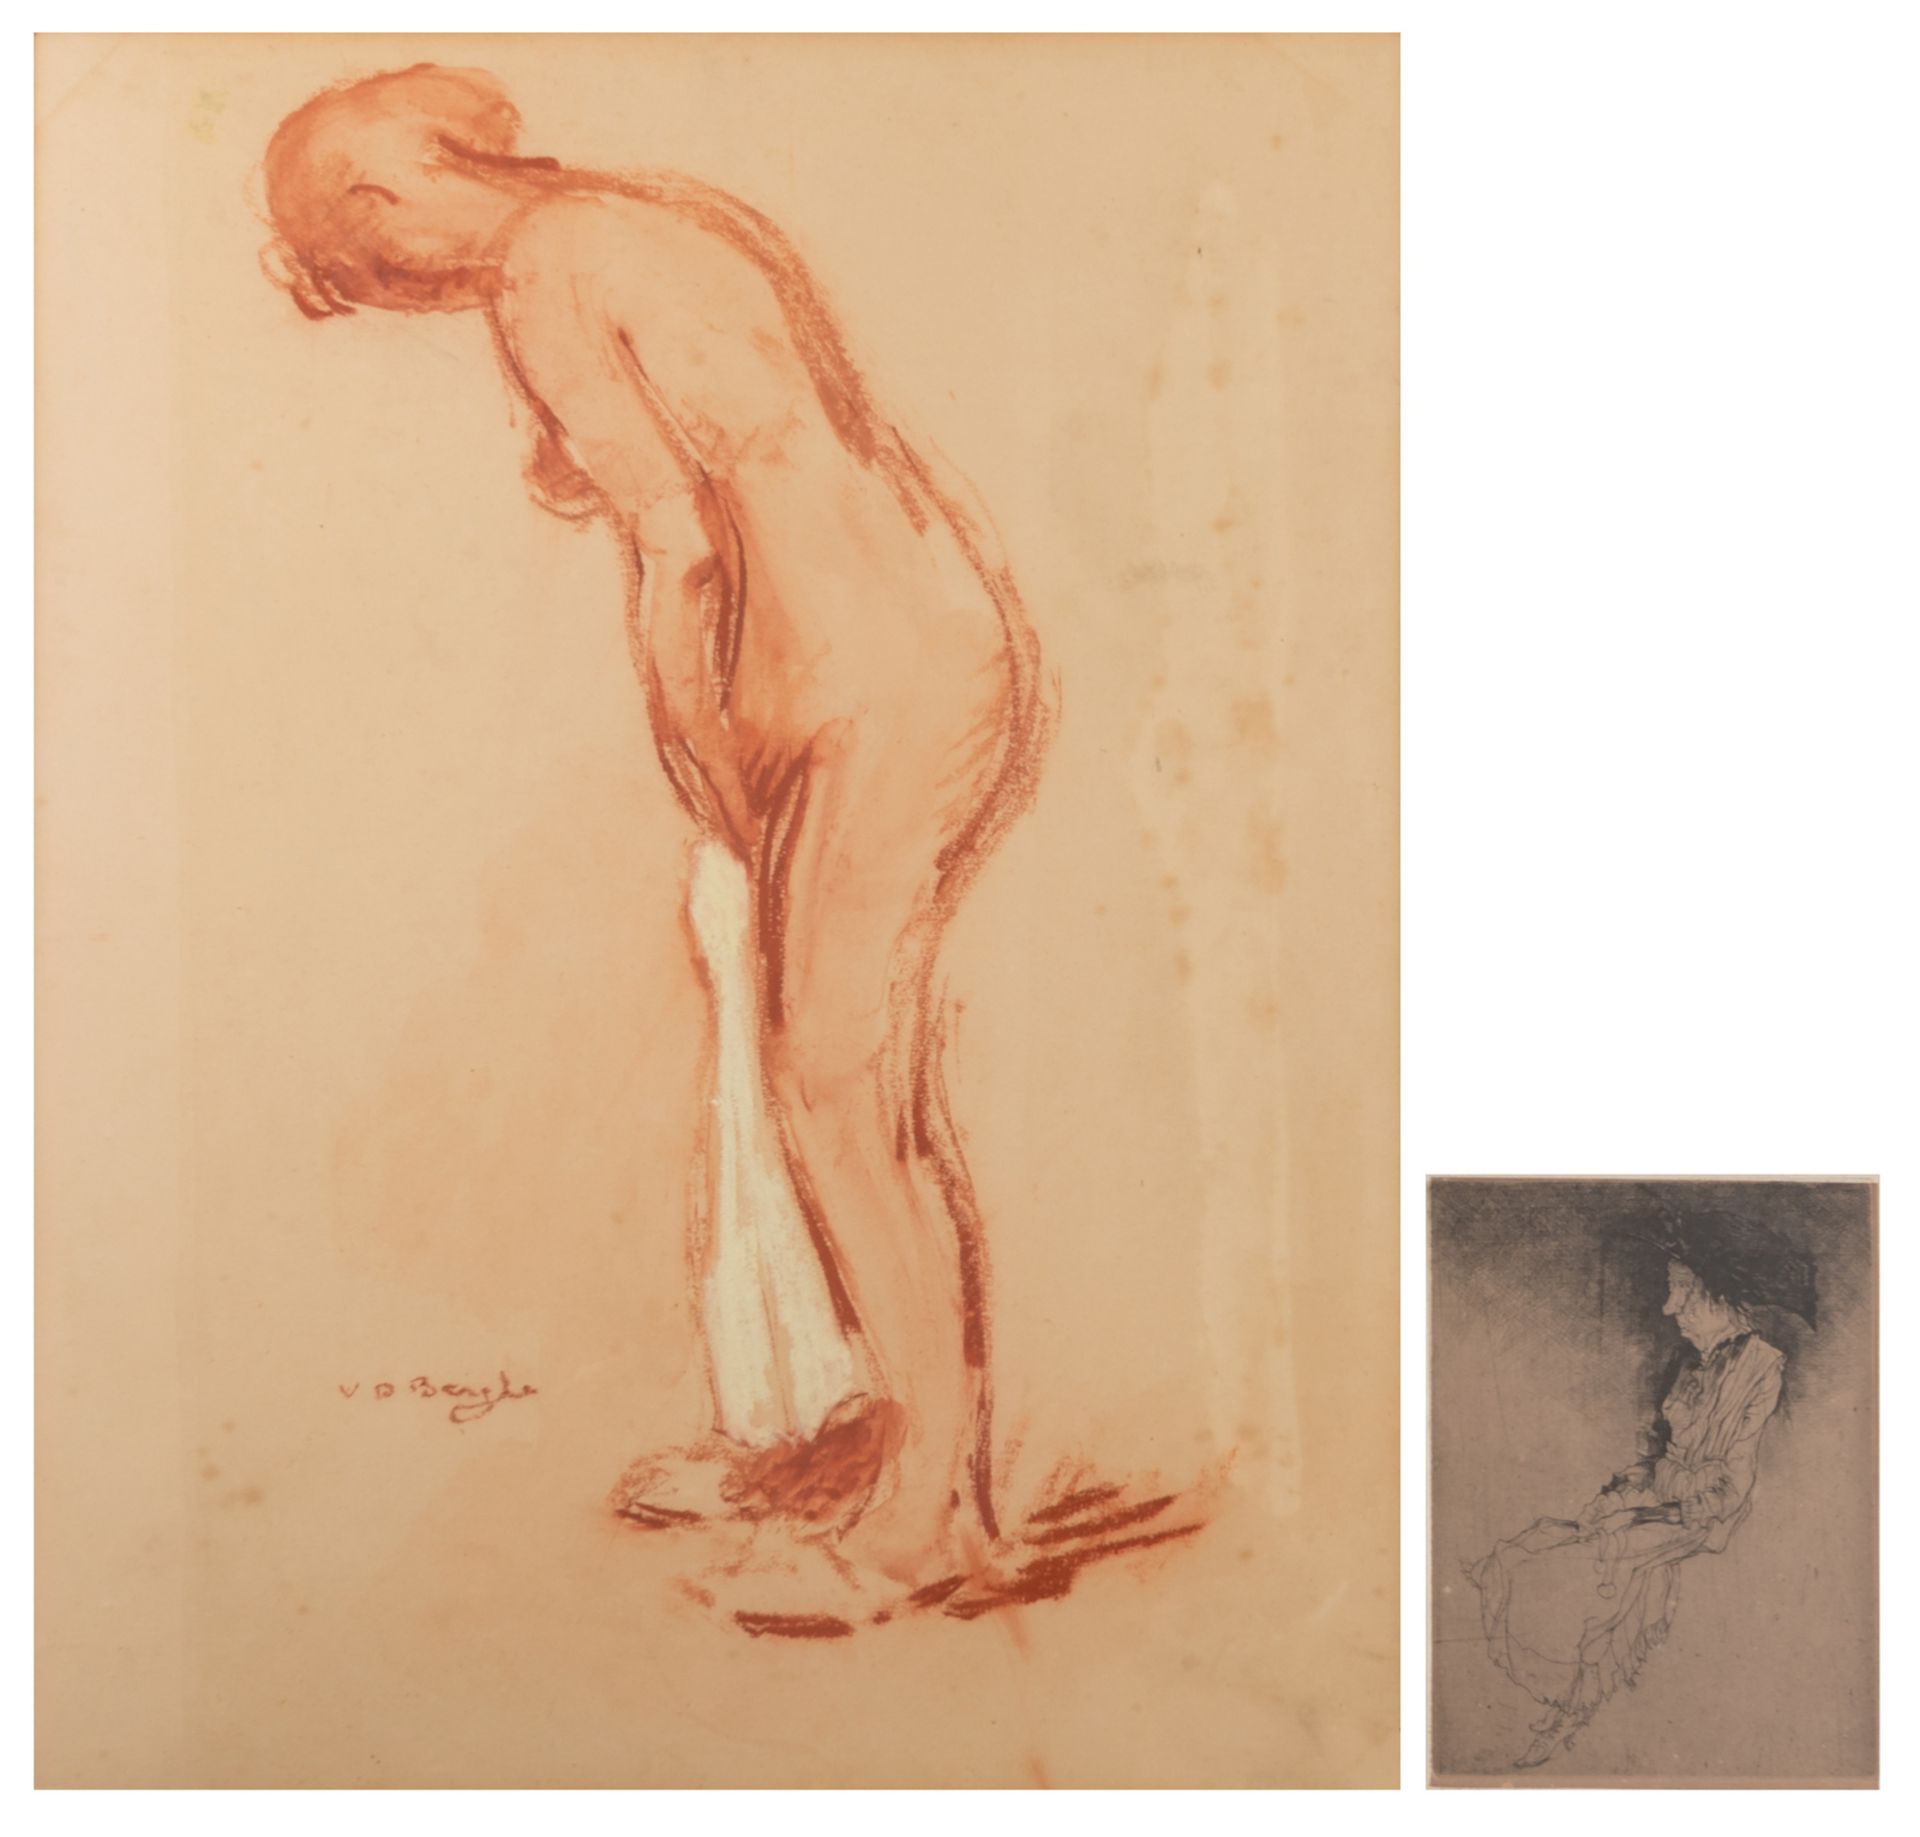 De Bruycker J., 'Vieille coquette', etching, 16/50, 12 x 16,5 cm; added Van Den Berghe R., a